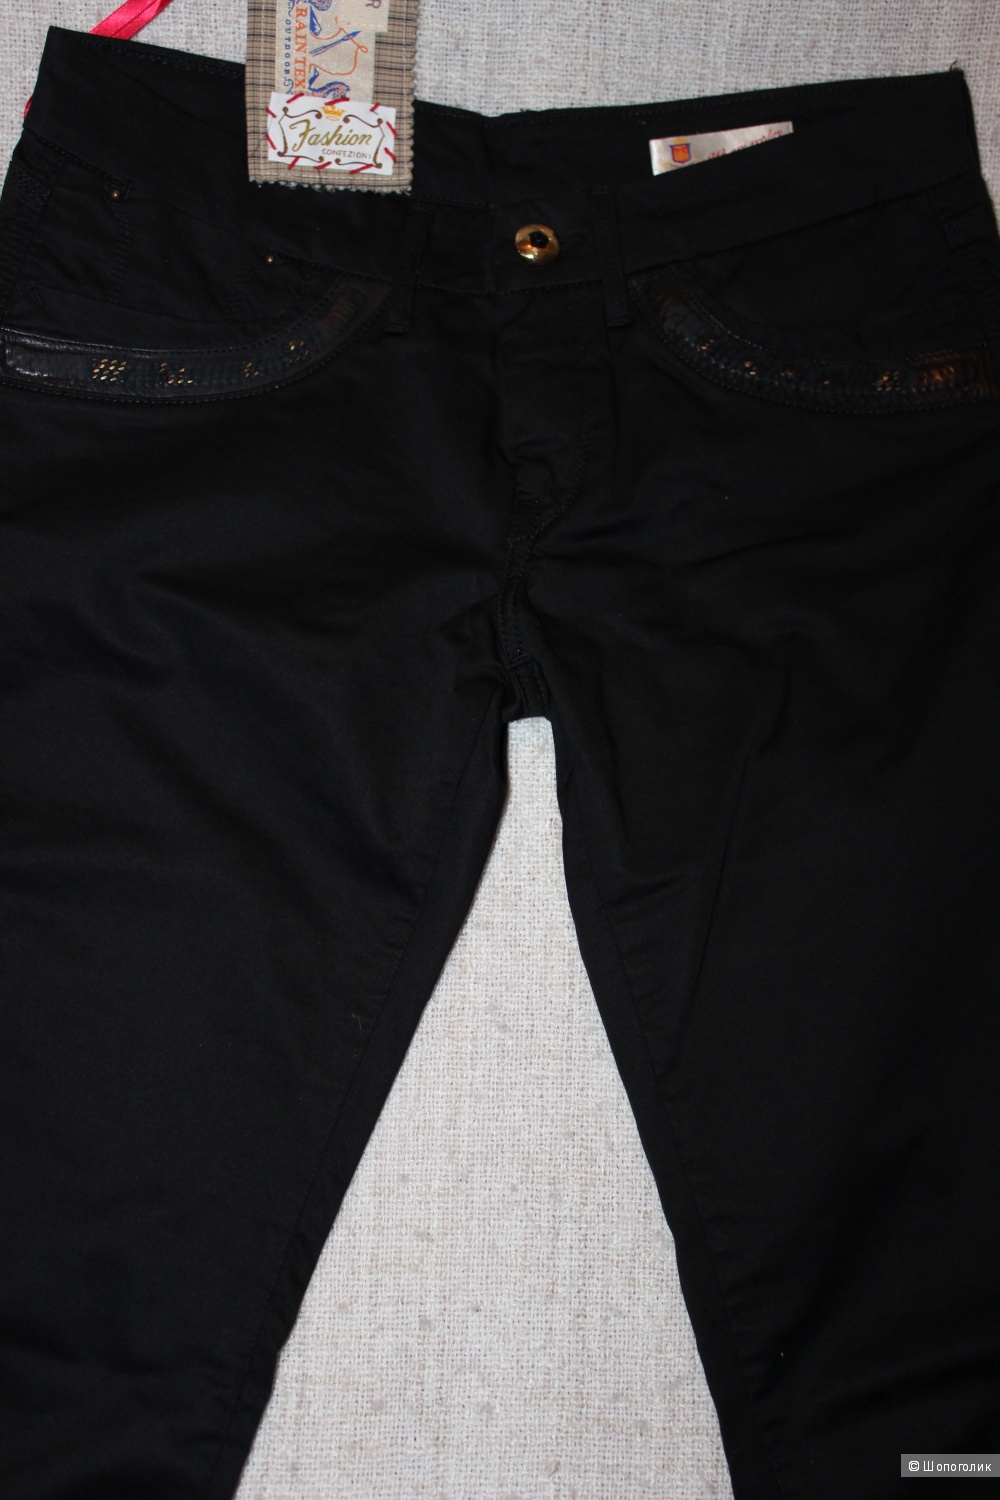 Брюки/джинсы WE ARE REPLAY, 29 размер, цвет черный.